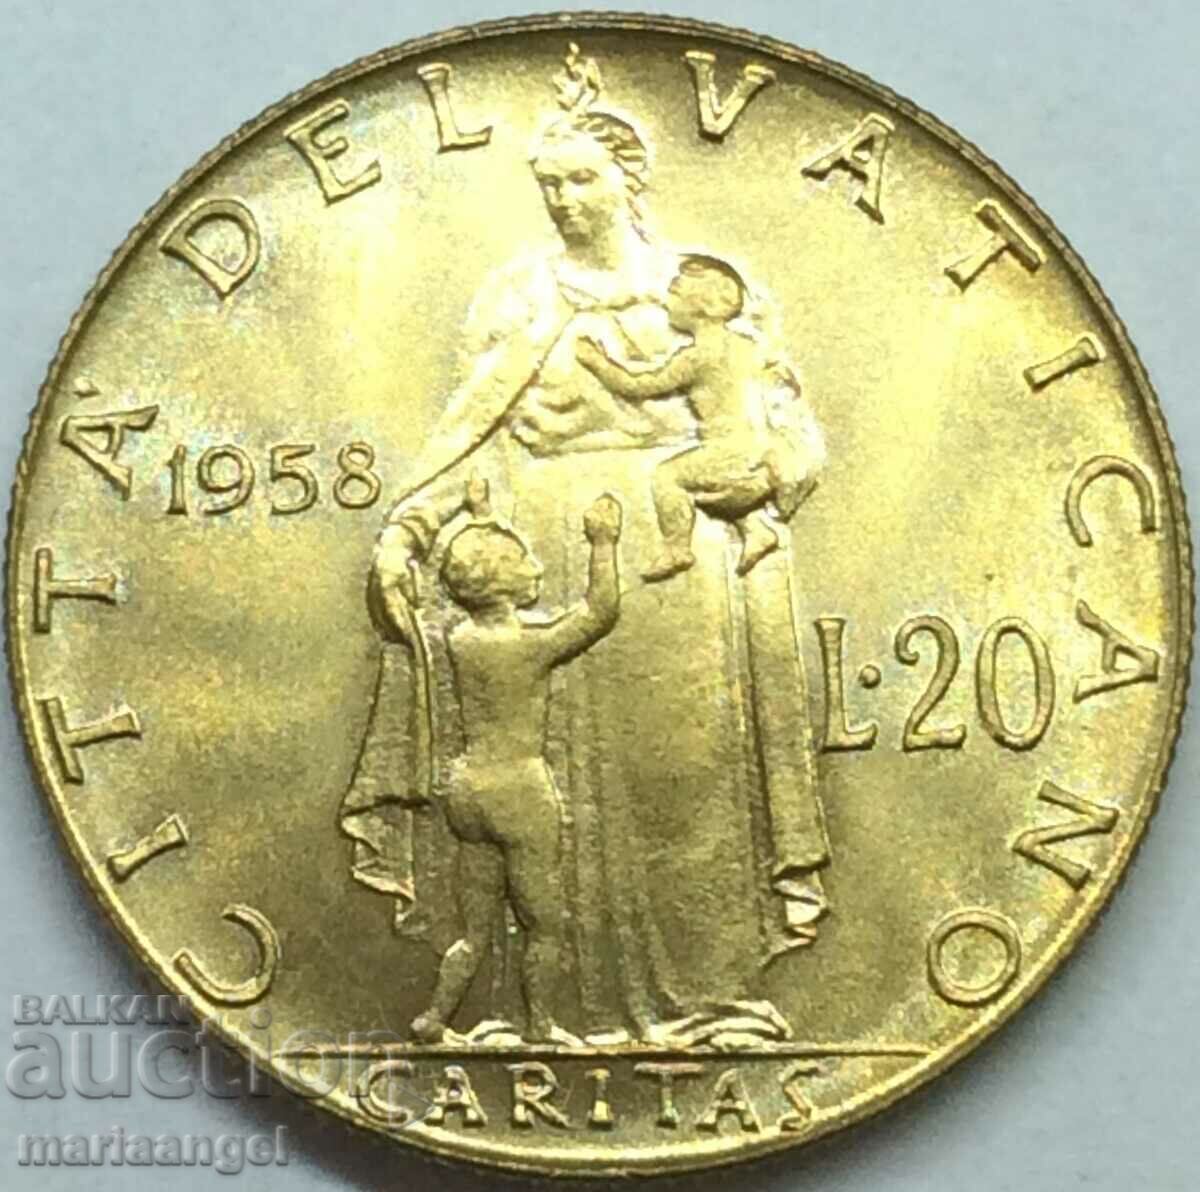 20 lire 1958 Vatican - quite rare